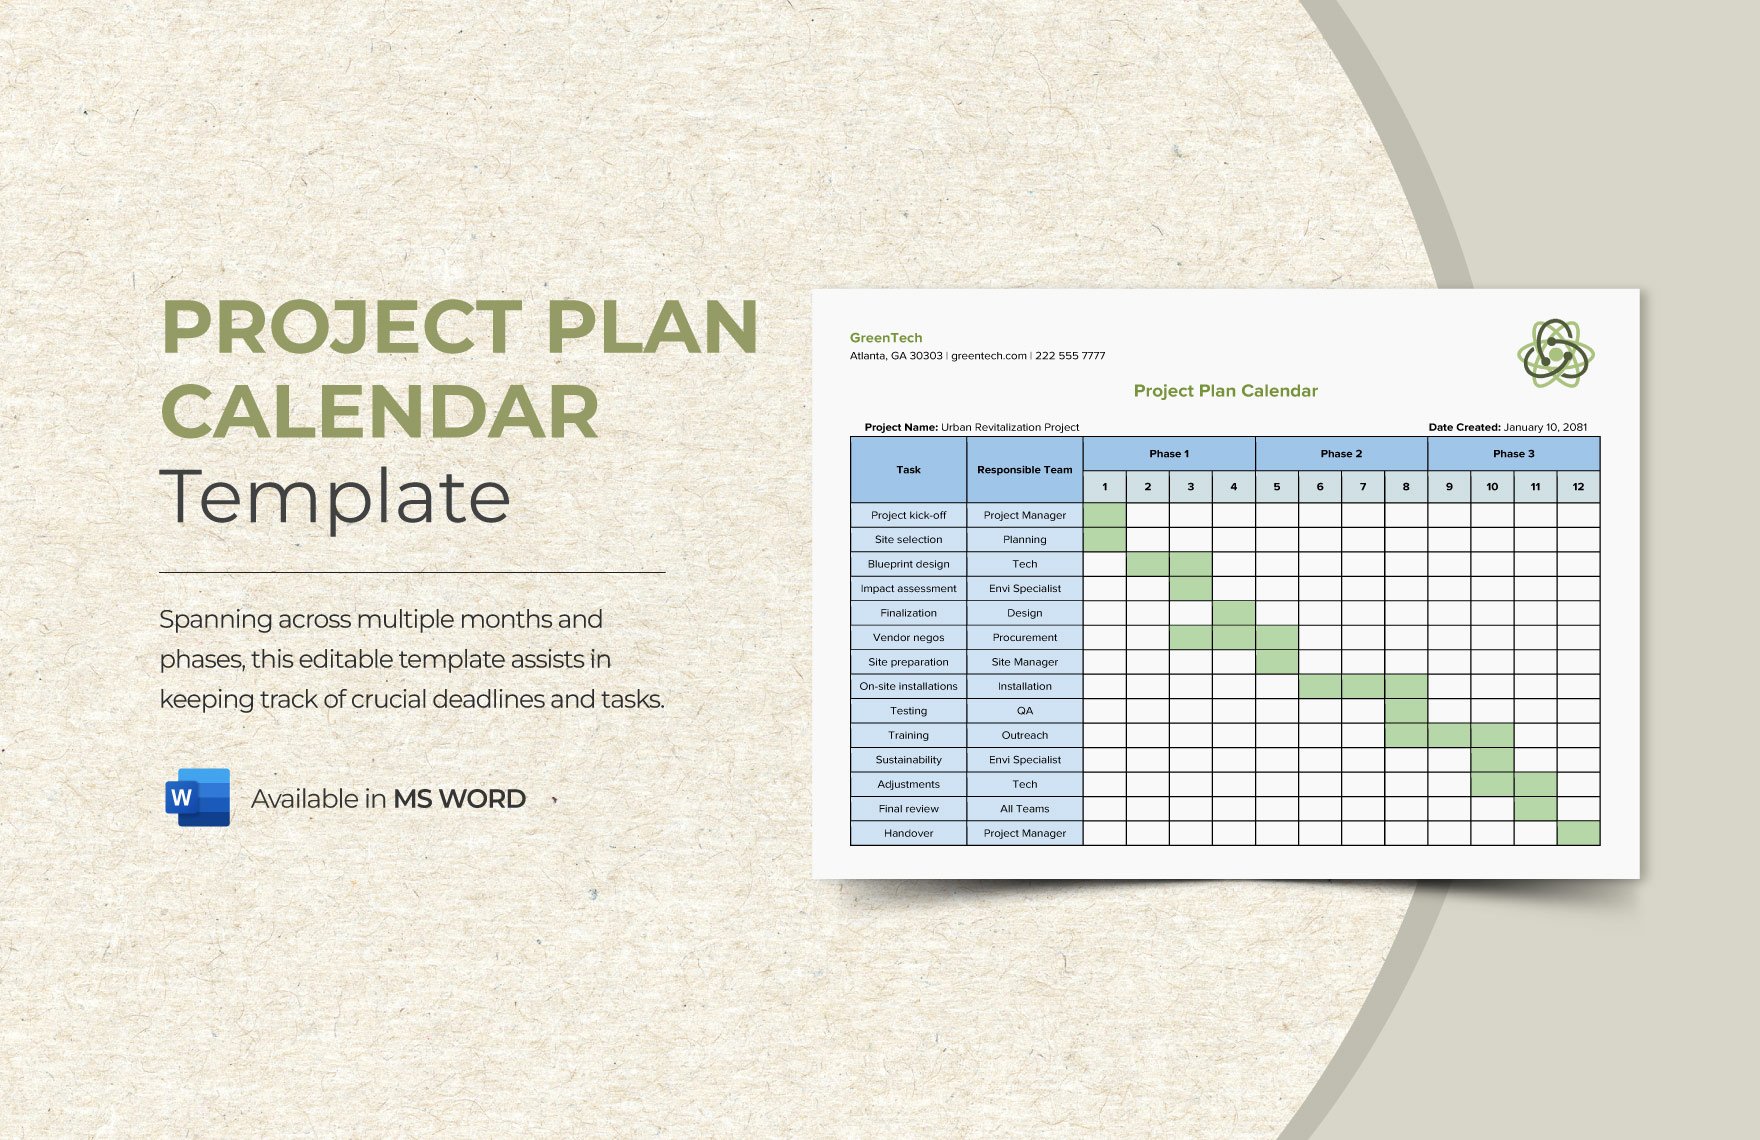 Project Plan Calendar Template